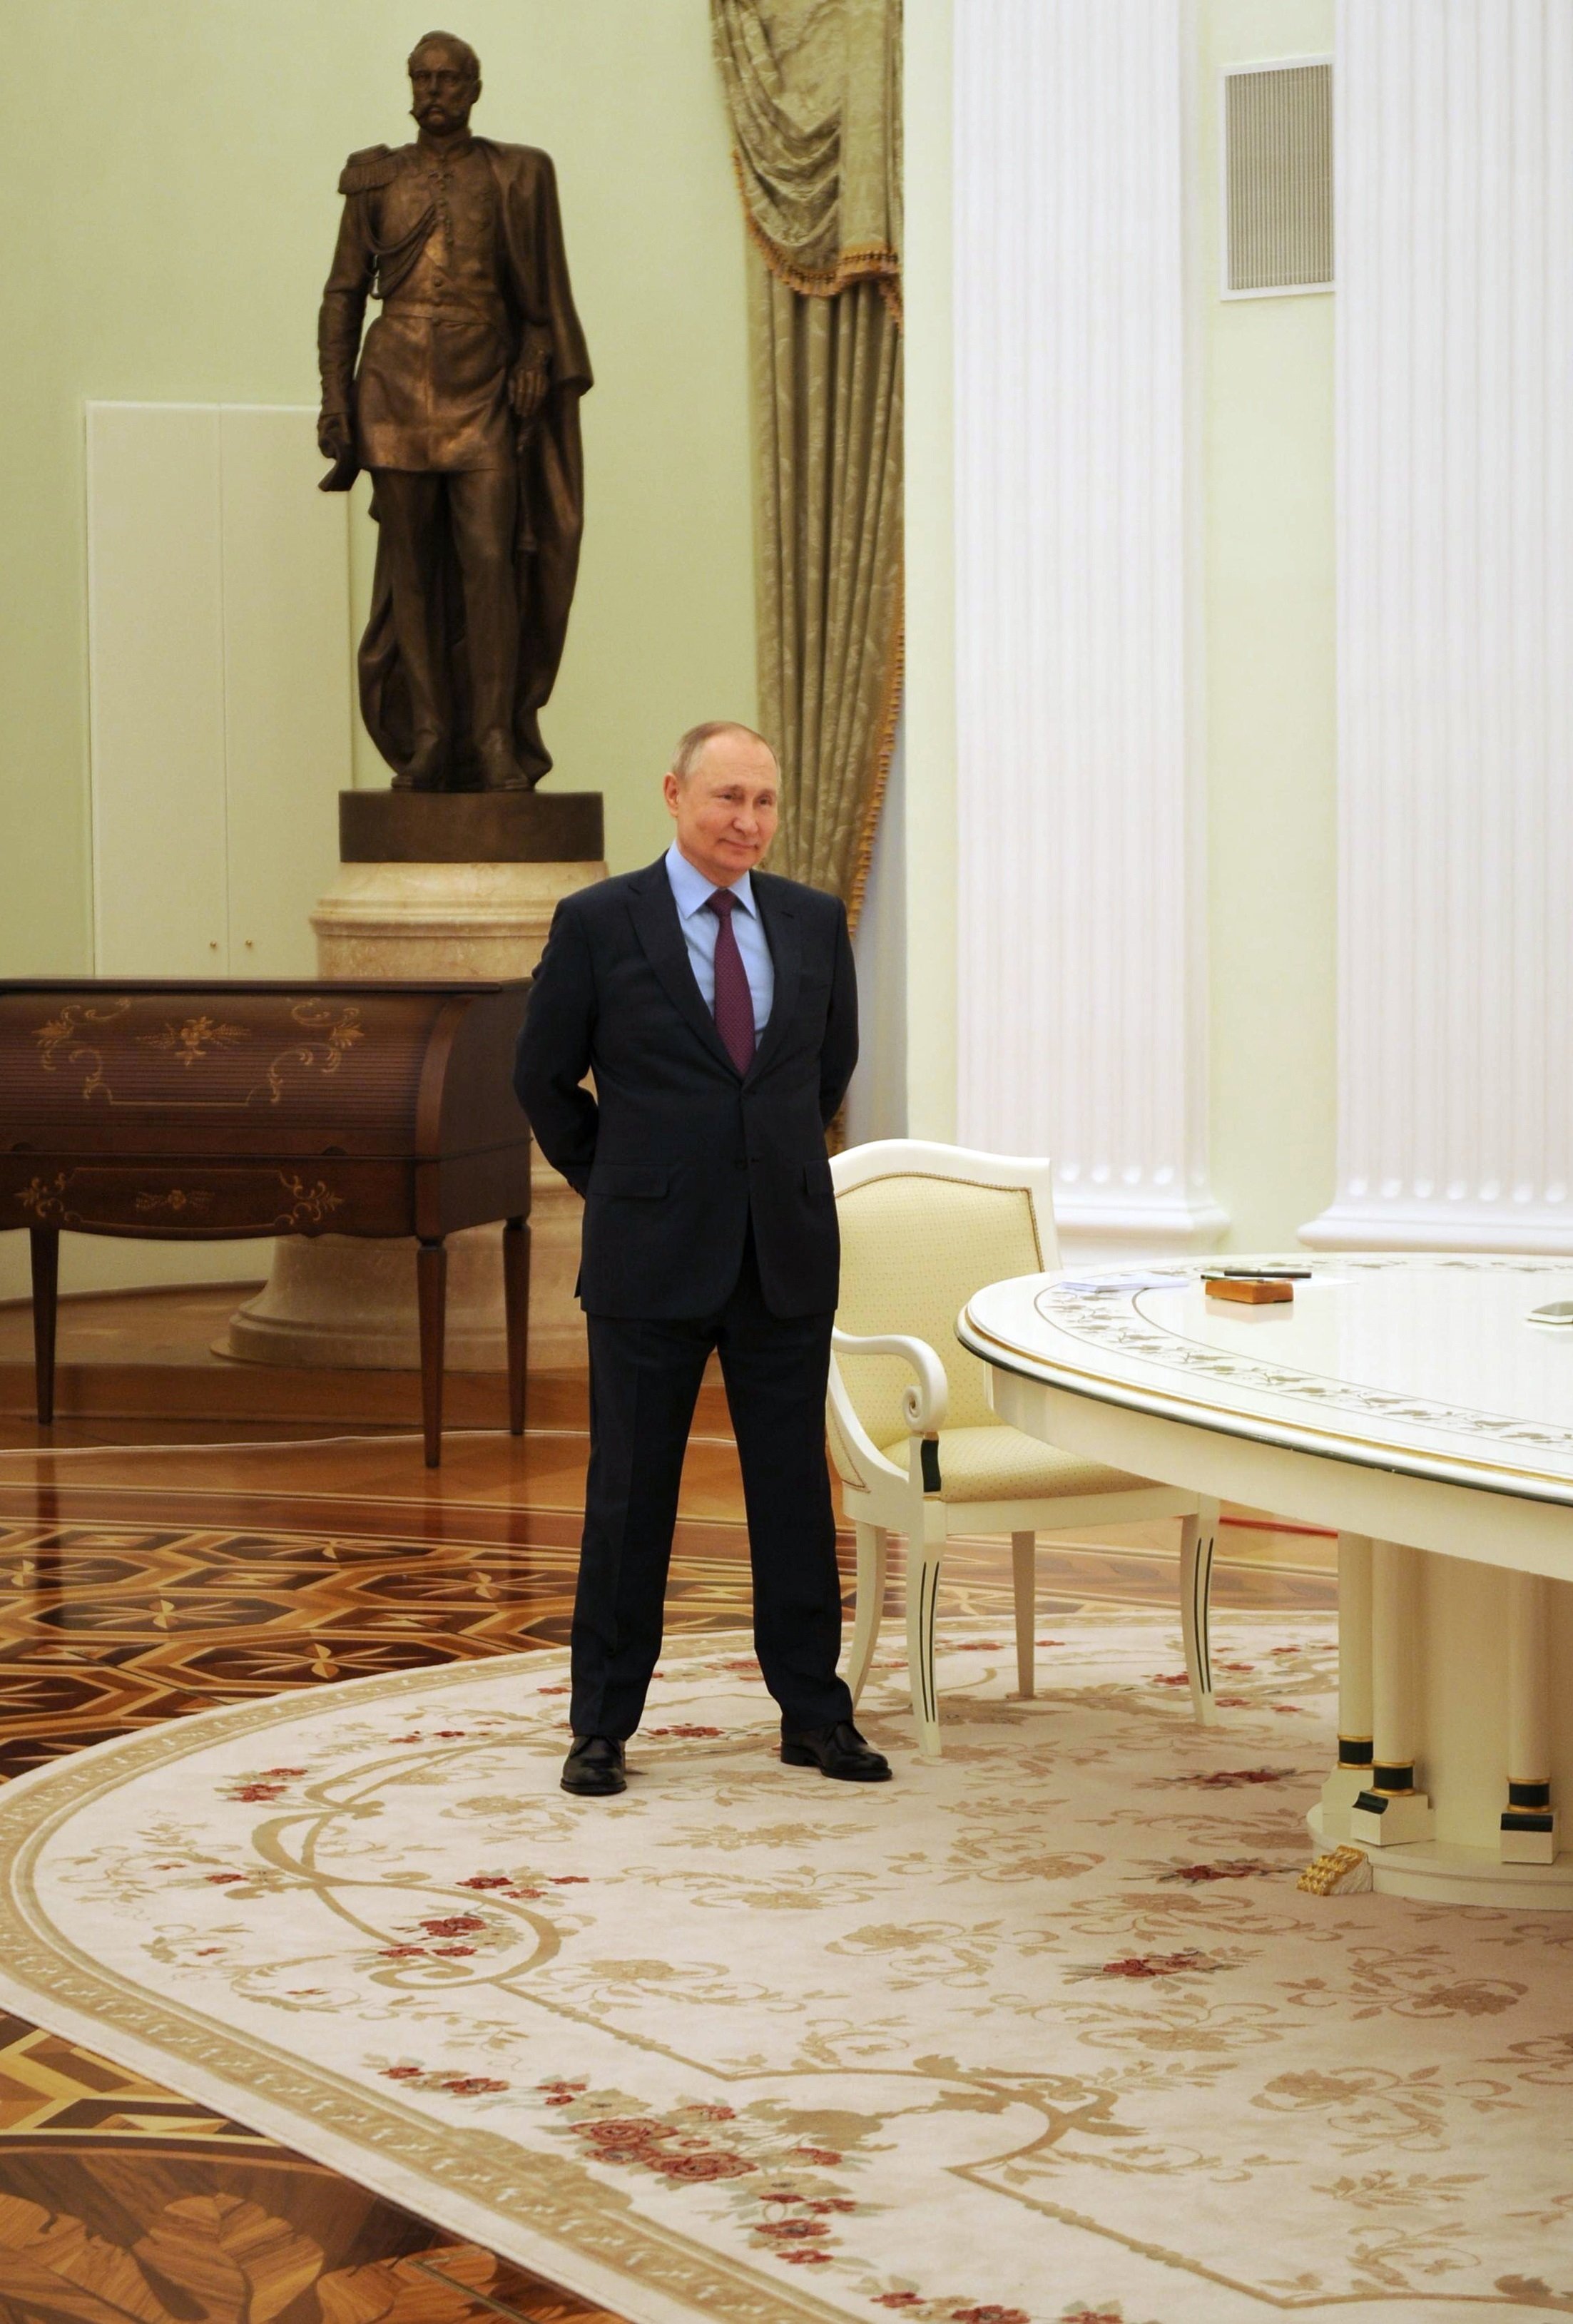 Putin està llest per a "solucions diplomàtiques" però els interessos de Rússia són "no negociables"